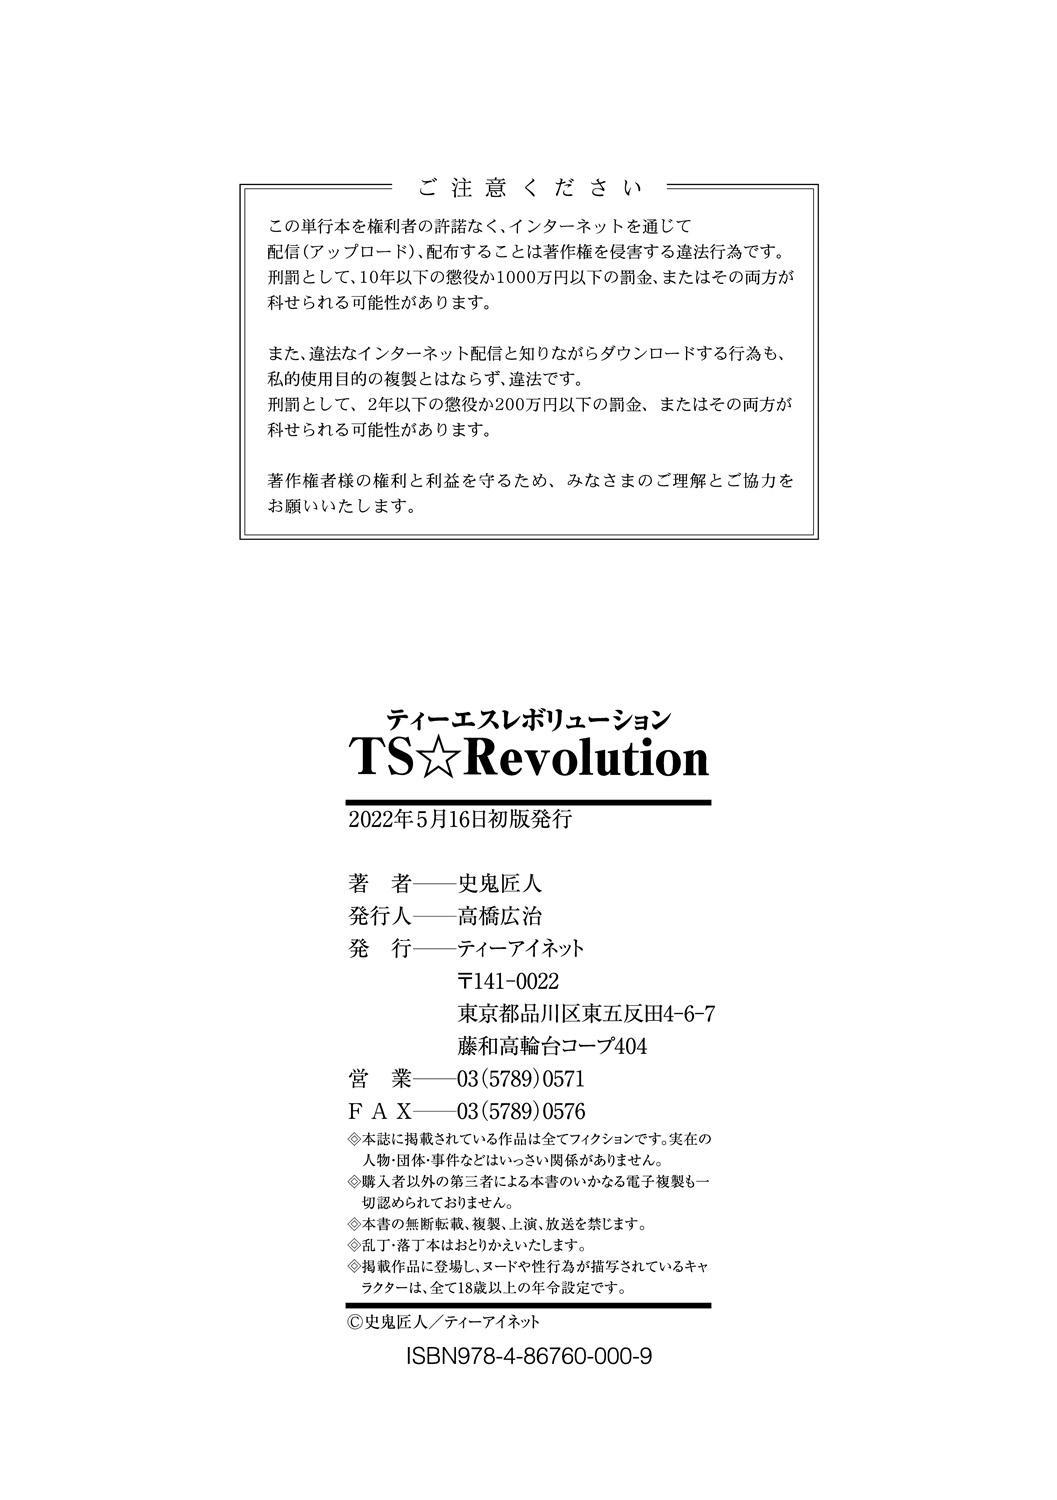 TS Revolution 225